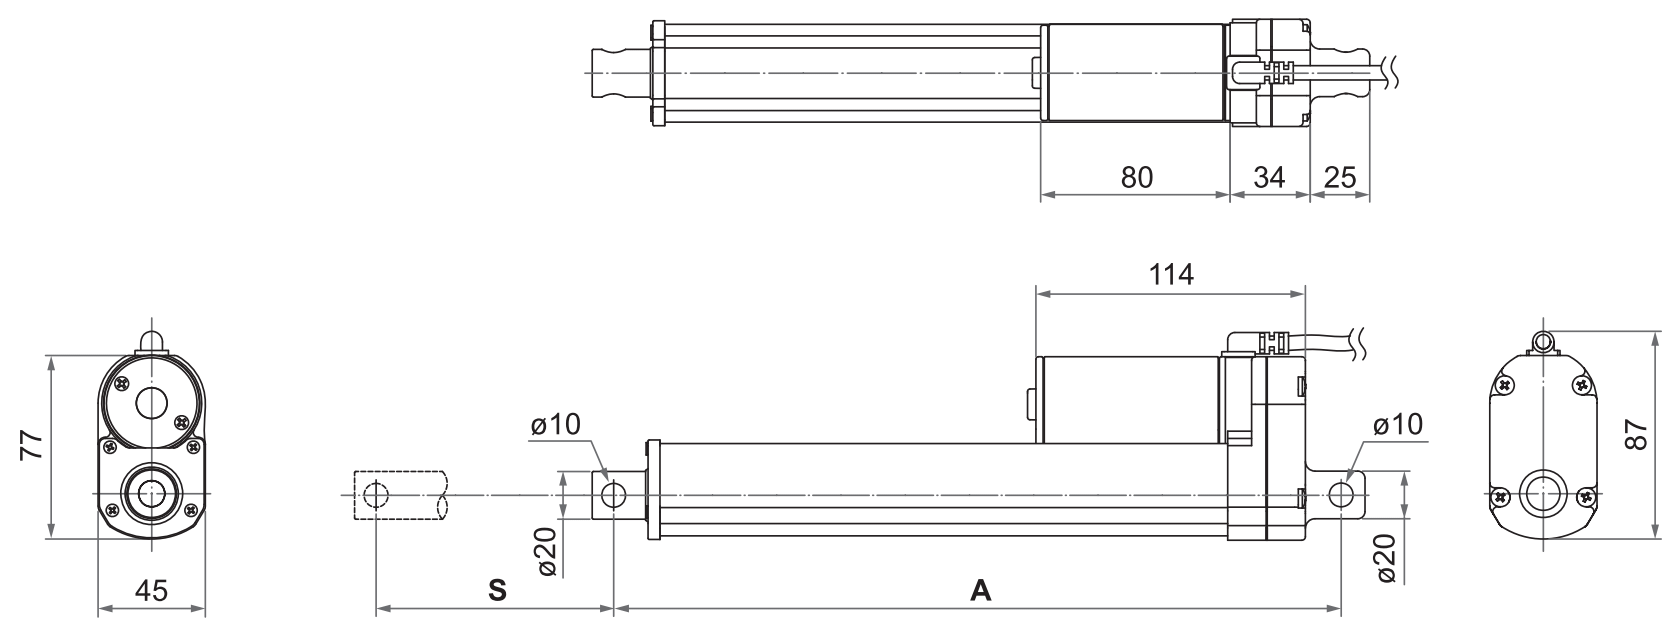 DSZY4 - Maßbild für die Varianten Standard oder Hallsensor